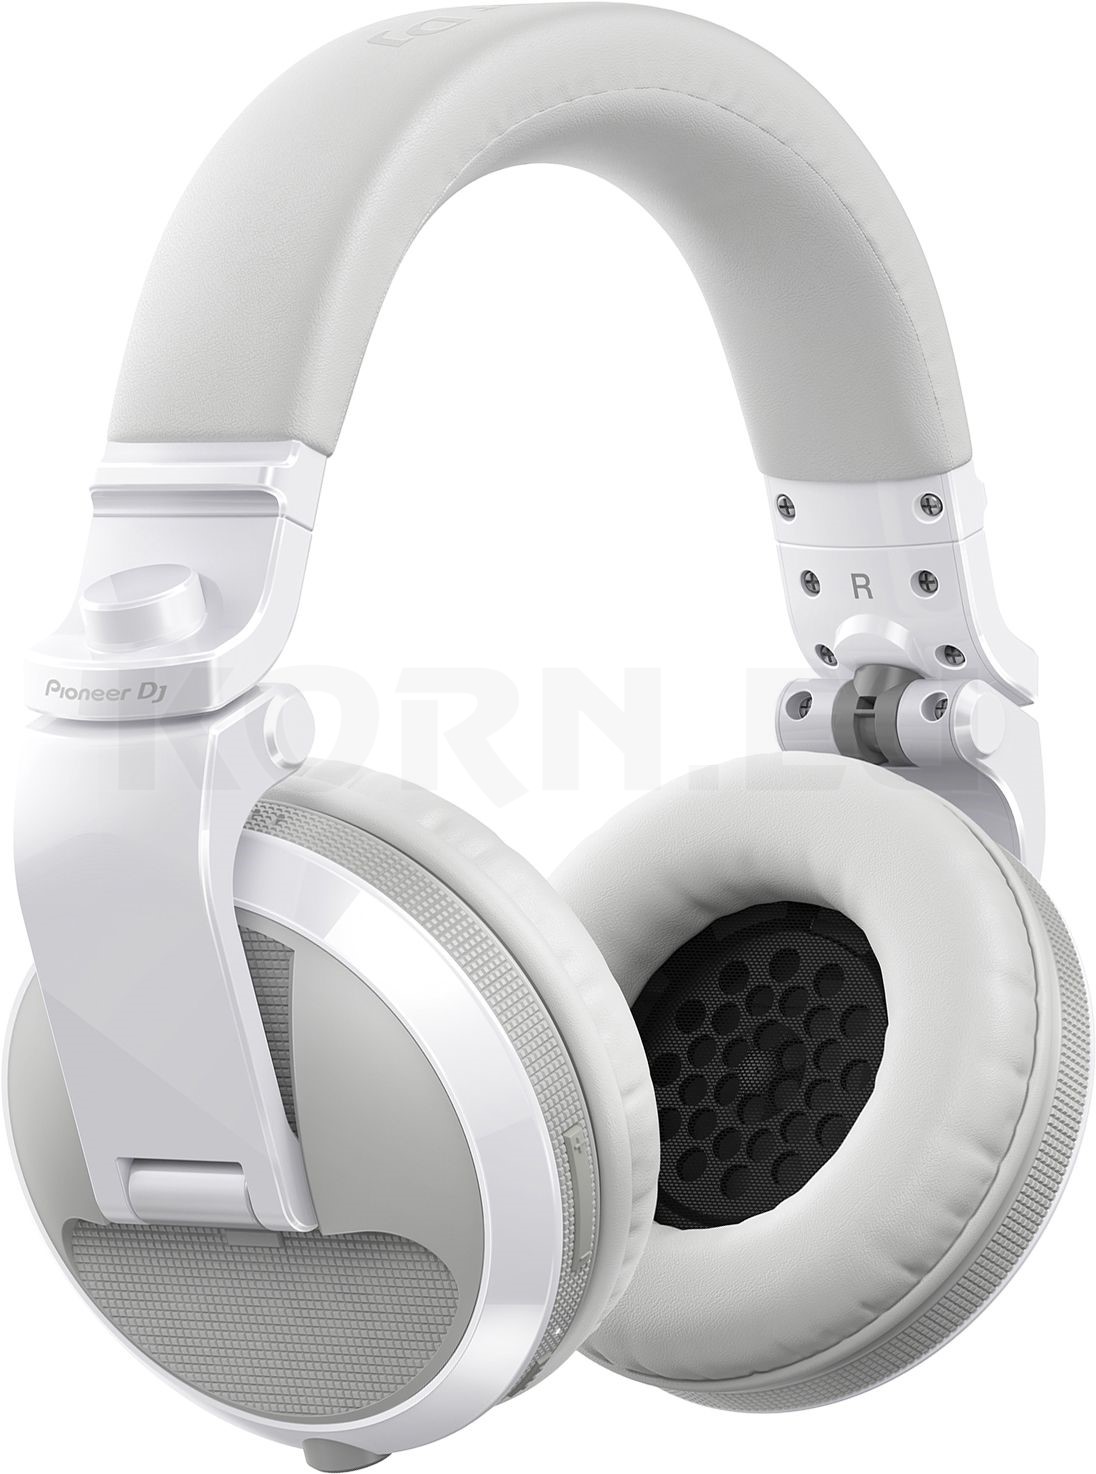 HDJ-X5BT-W White Pioneer DJ DJ Headphones 